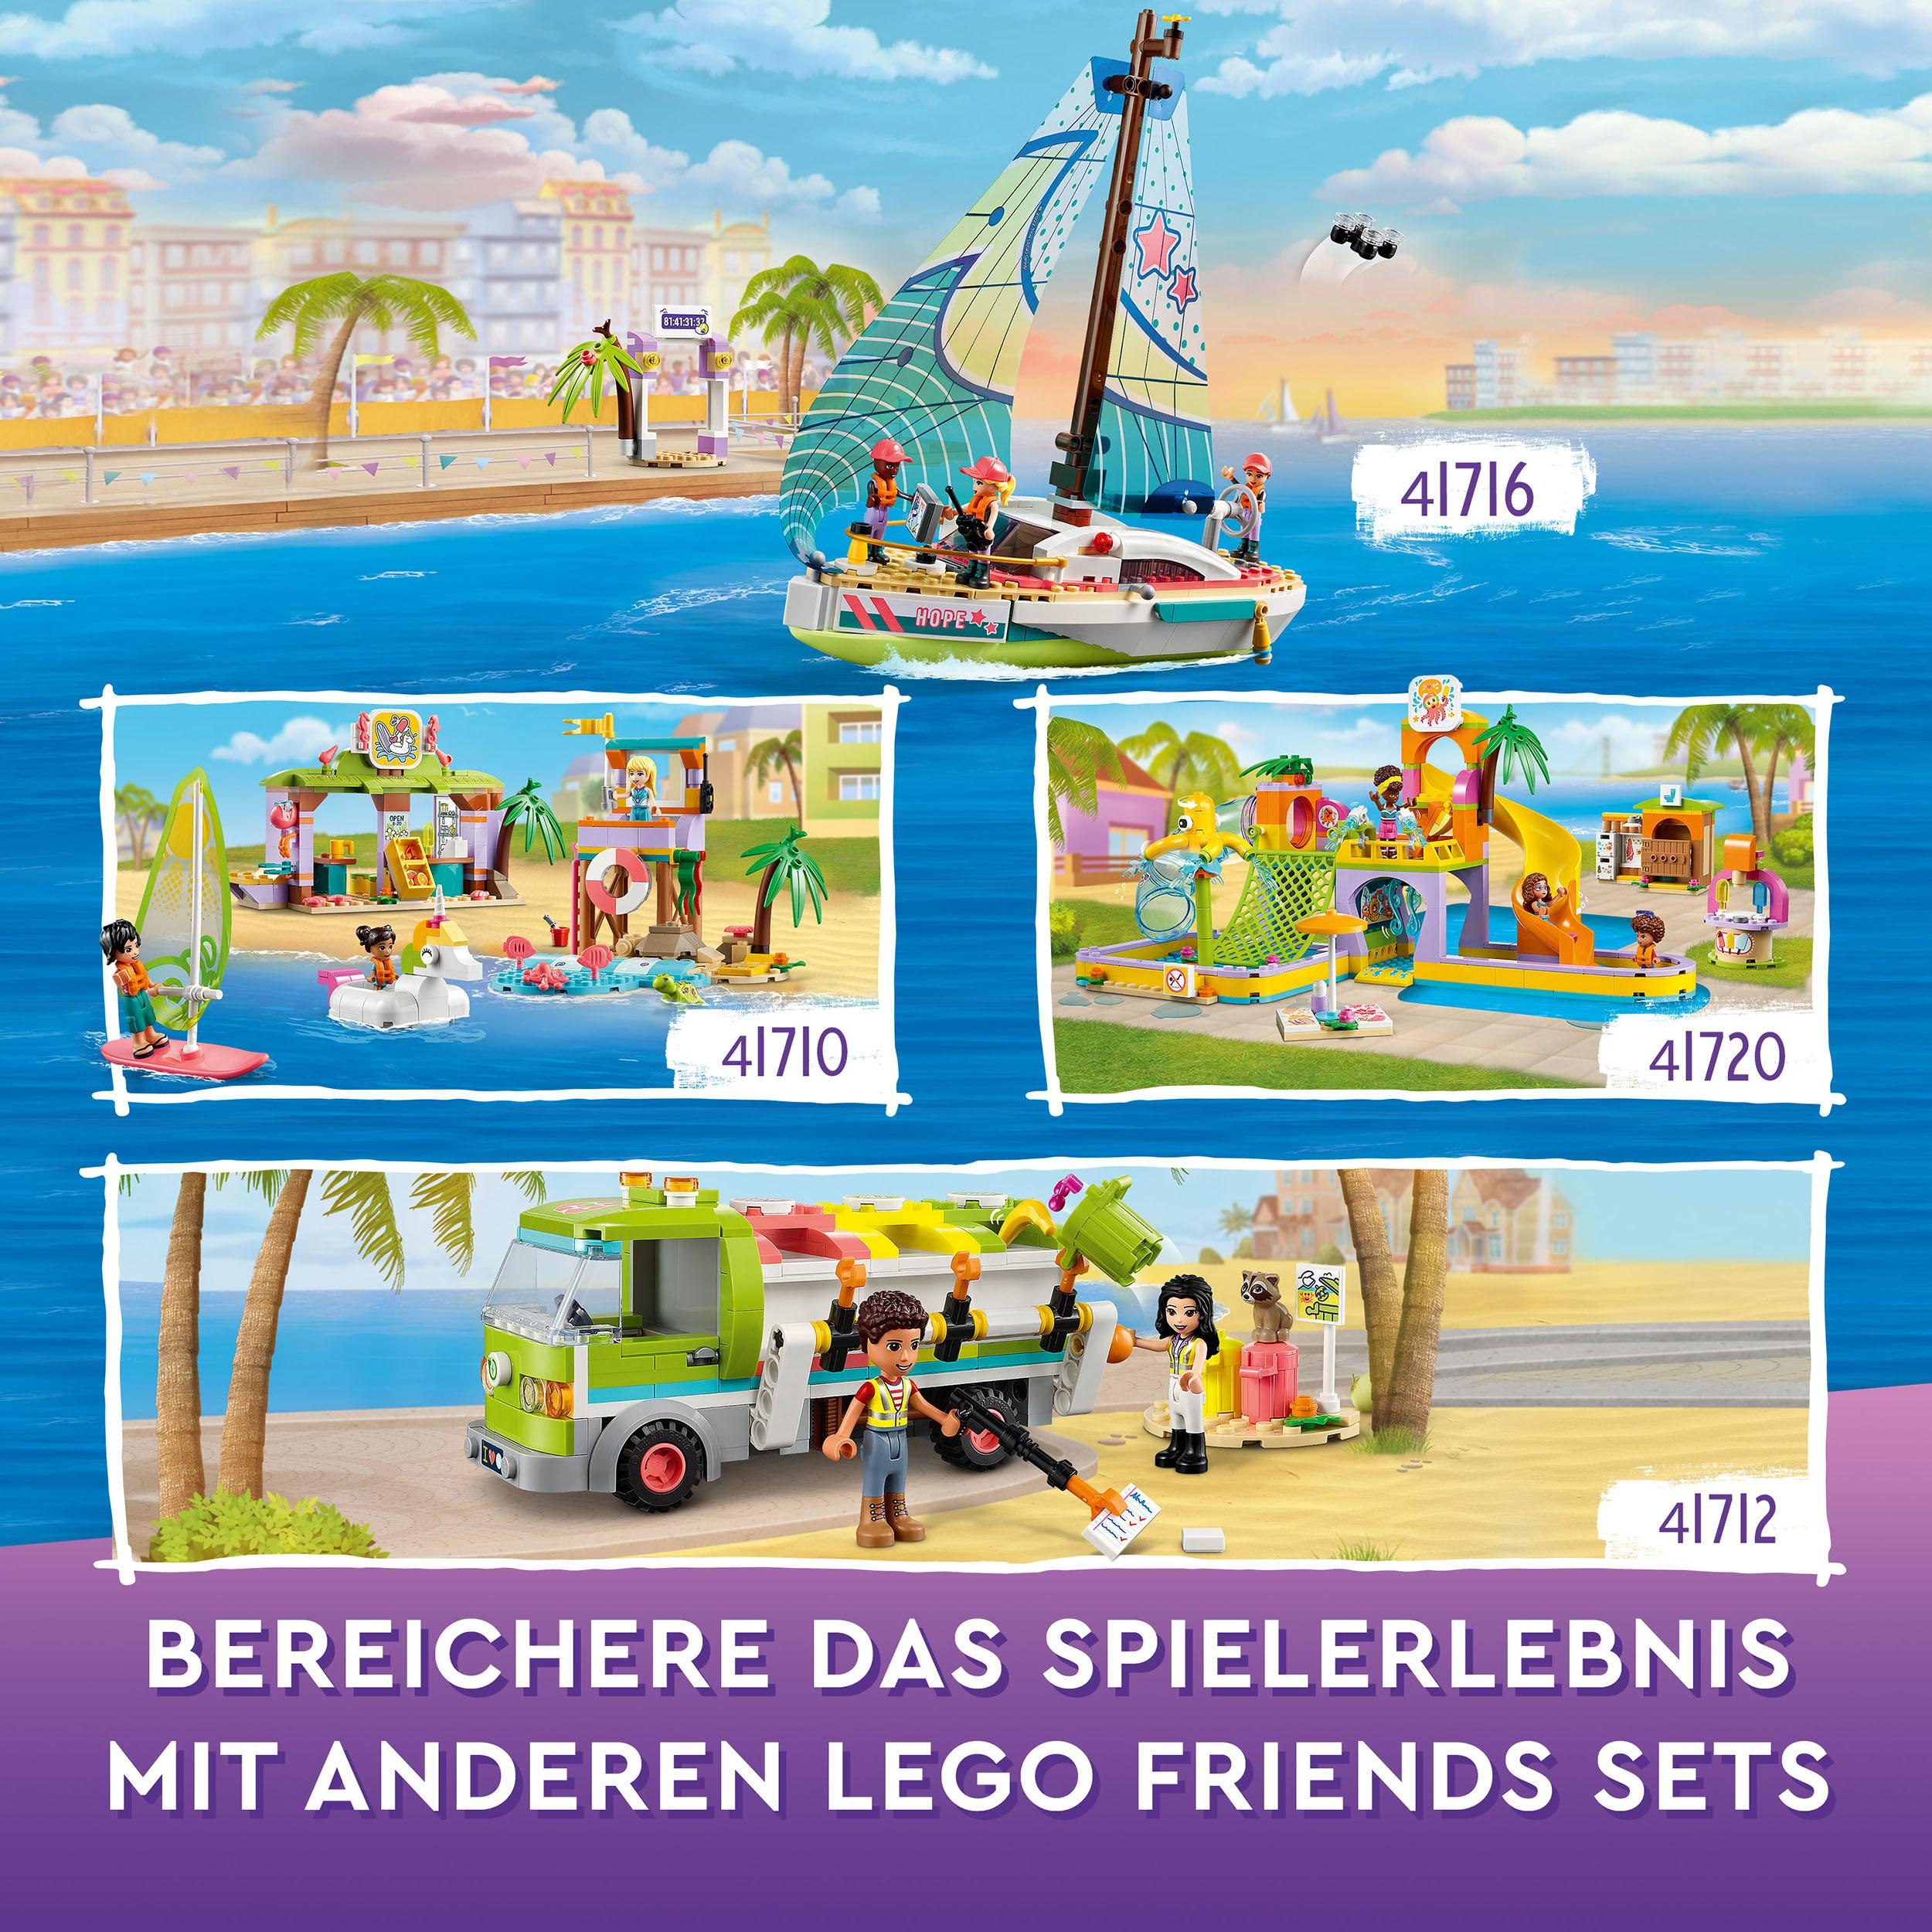 Bausatz, LEGO 41720 Mehrfarbig Friends Wassererlebnispark